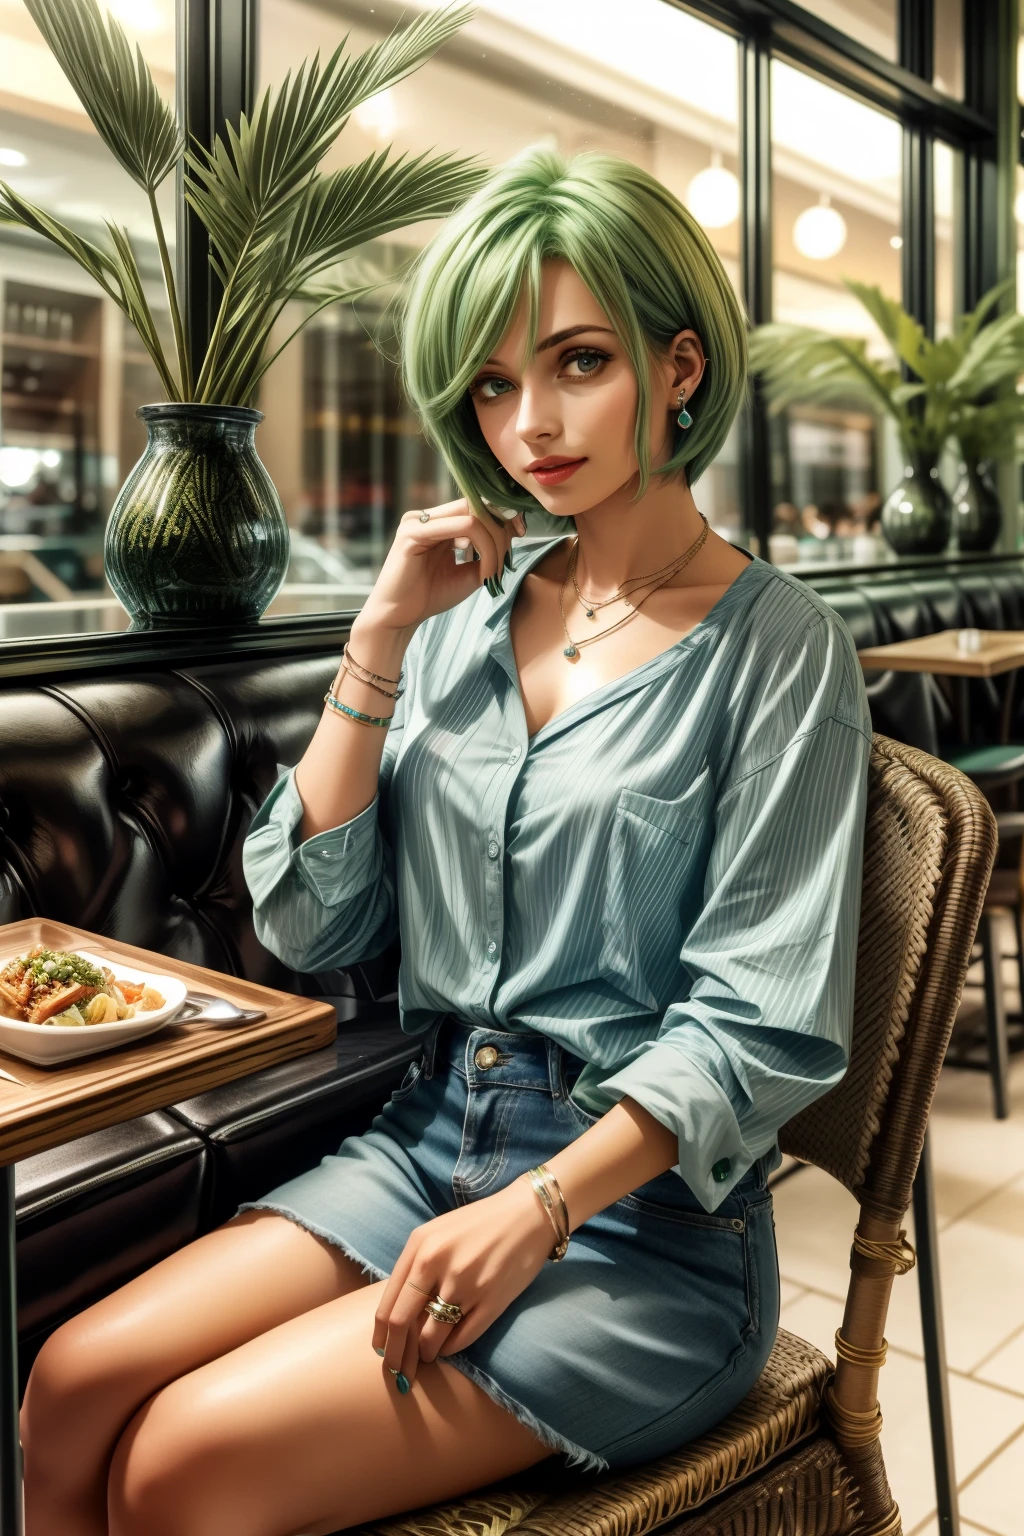 프레데리카 그린힐, 25 살, 지름길, 녹색 머리, wea반지 a light Blue casual shirts fashion at a casual restaurant, 의자에 앉아 , ear반지s, 목걸이, 반지, 팔찌, 